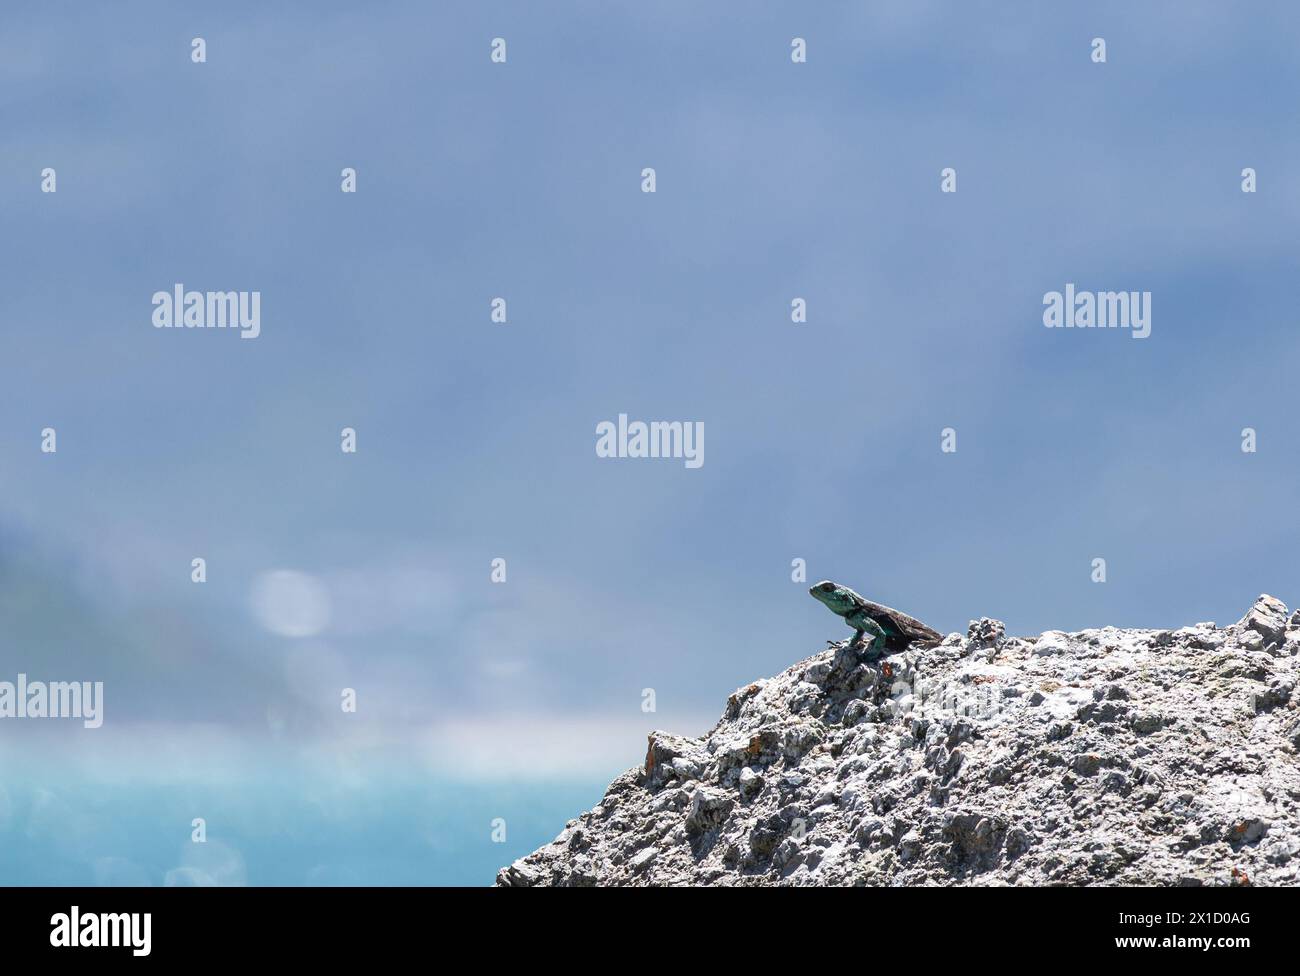 Kleine niedliche Tierechse in der Wildnis auf dem Felsen in der unteren rechten Ecke des Rahmens blickt in die Ferne. Sommer Natur Tiertapete. Blauer Hintergrund Stockfoto